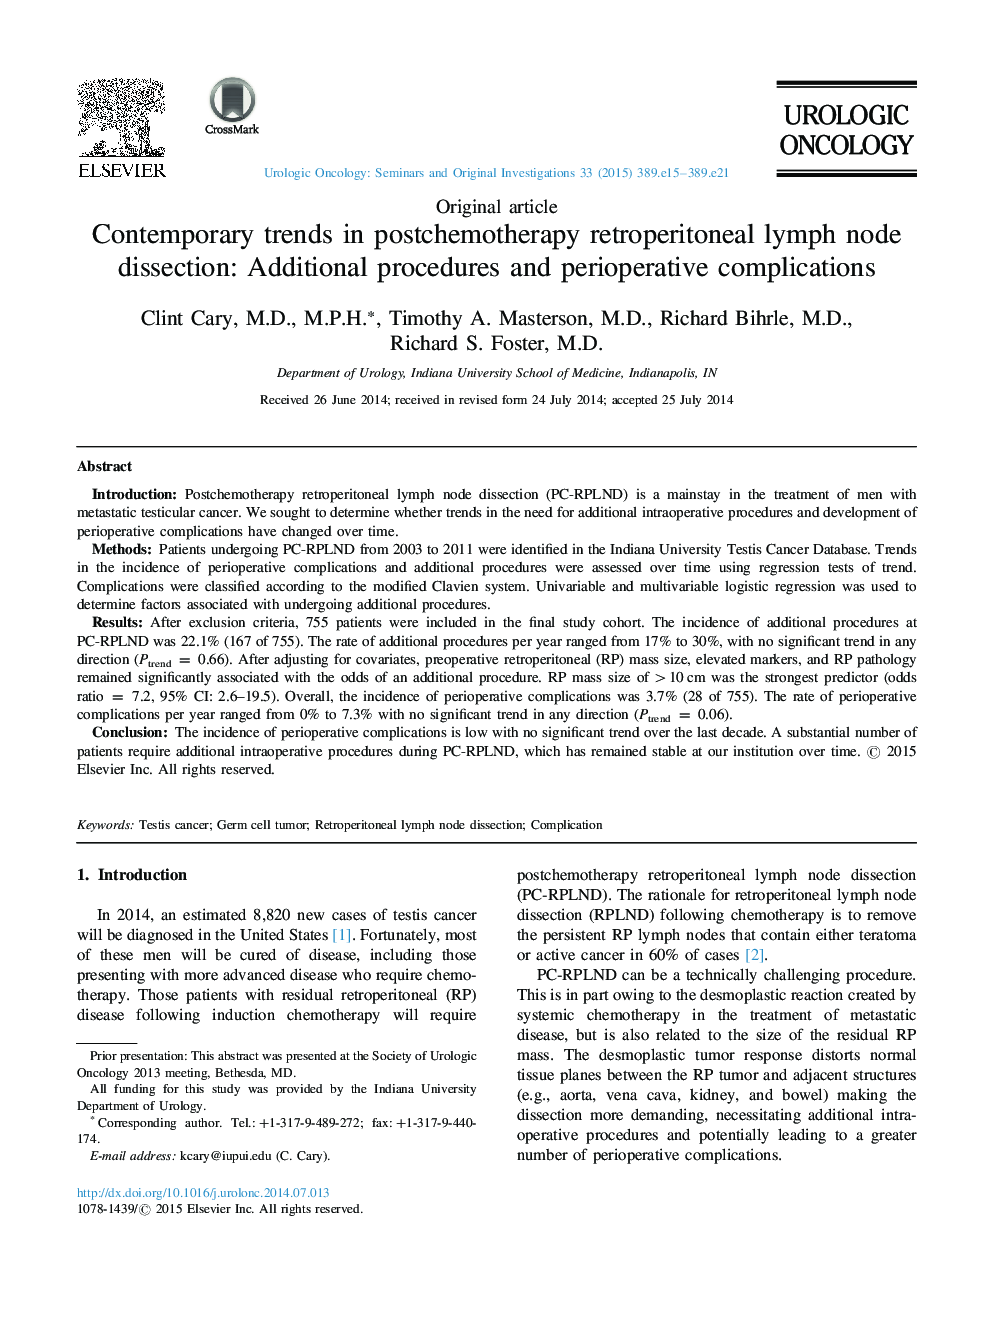 روند معاصر در تشخیص گره لنفاوی انتروپوریتون بعد از شیمیدرمانی: روشهای اضافی و عوارض احتیاطی 